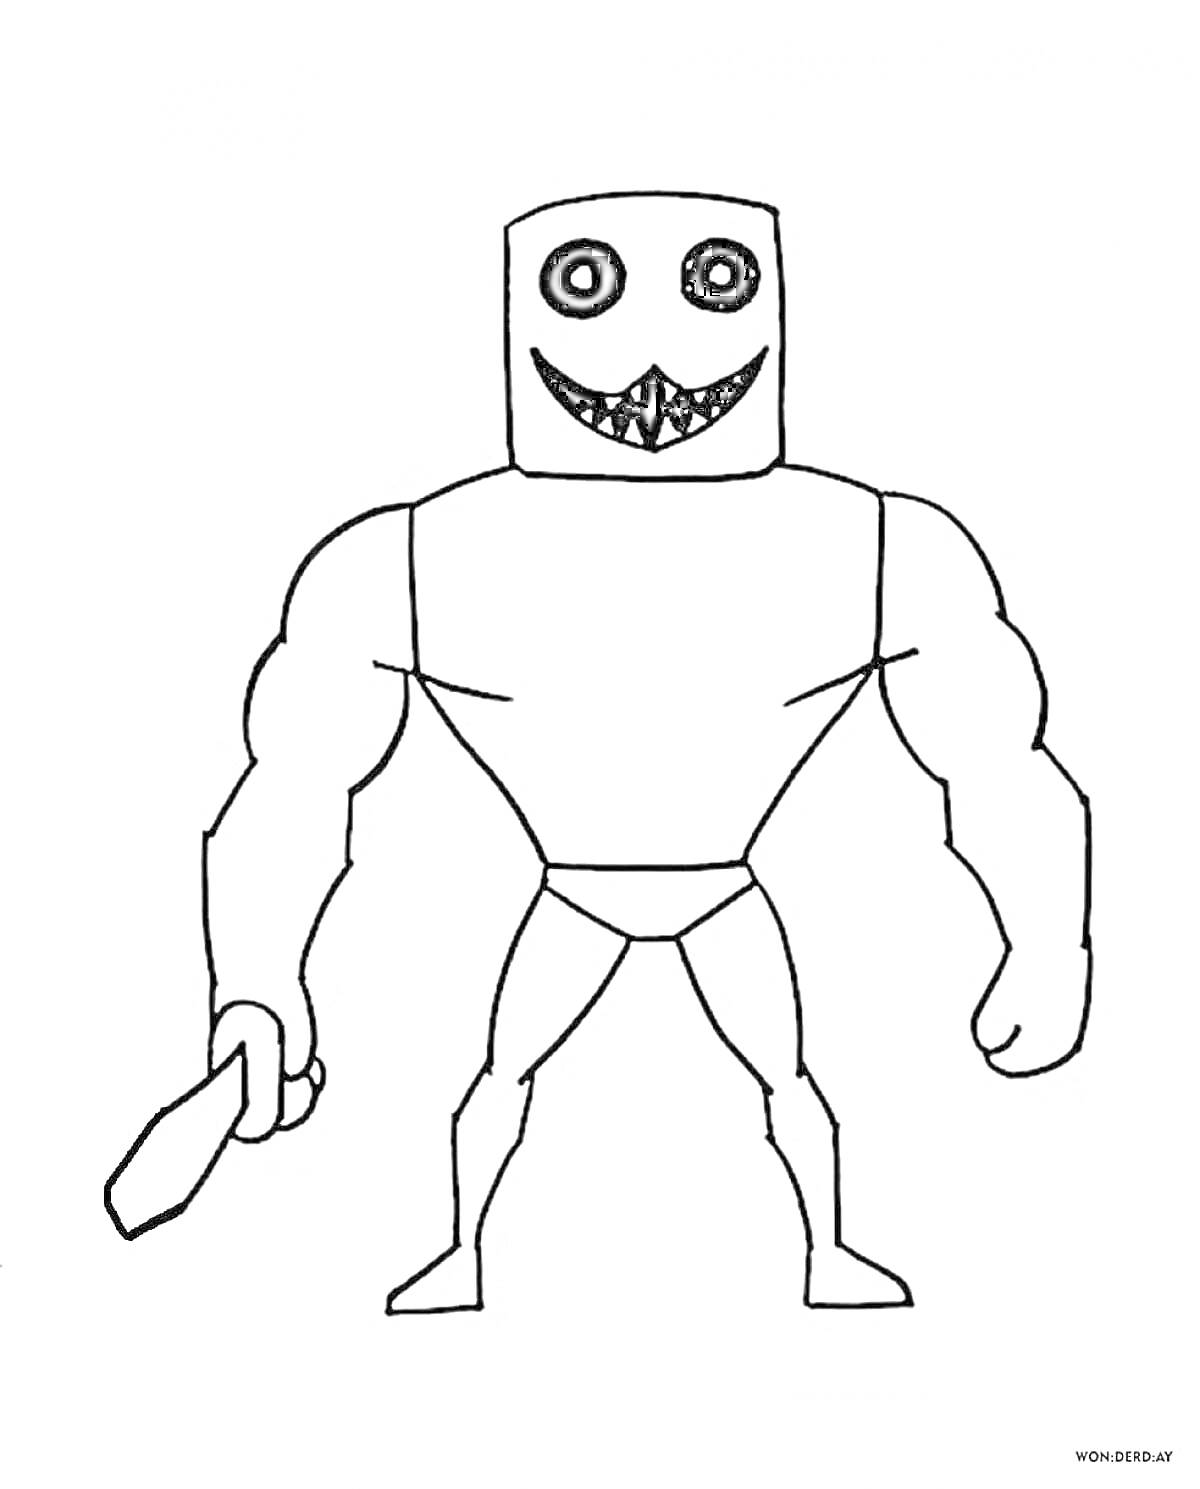 Раскраска Человек с прямоугольной головой, без волос, с большими глазами и широкой улыбкой с зубами, держит меч, мускулистое тело, одет в трусы